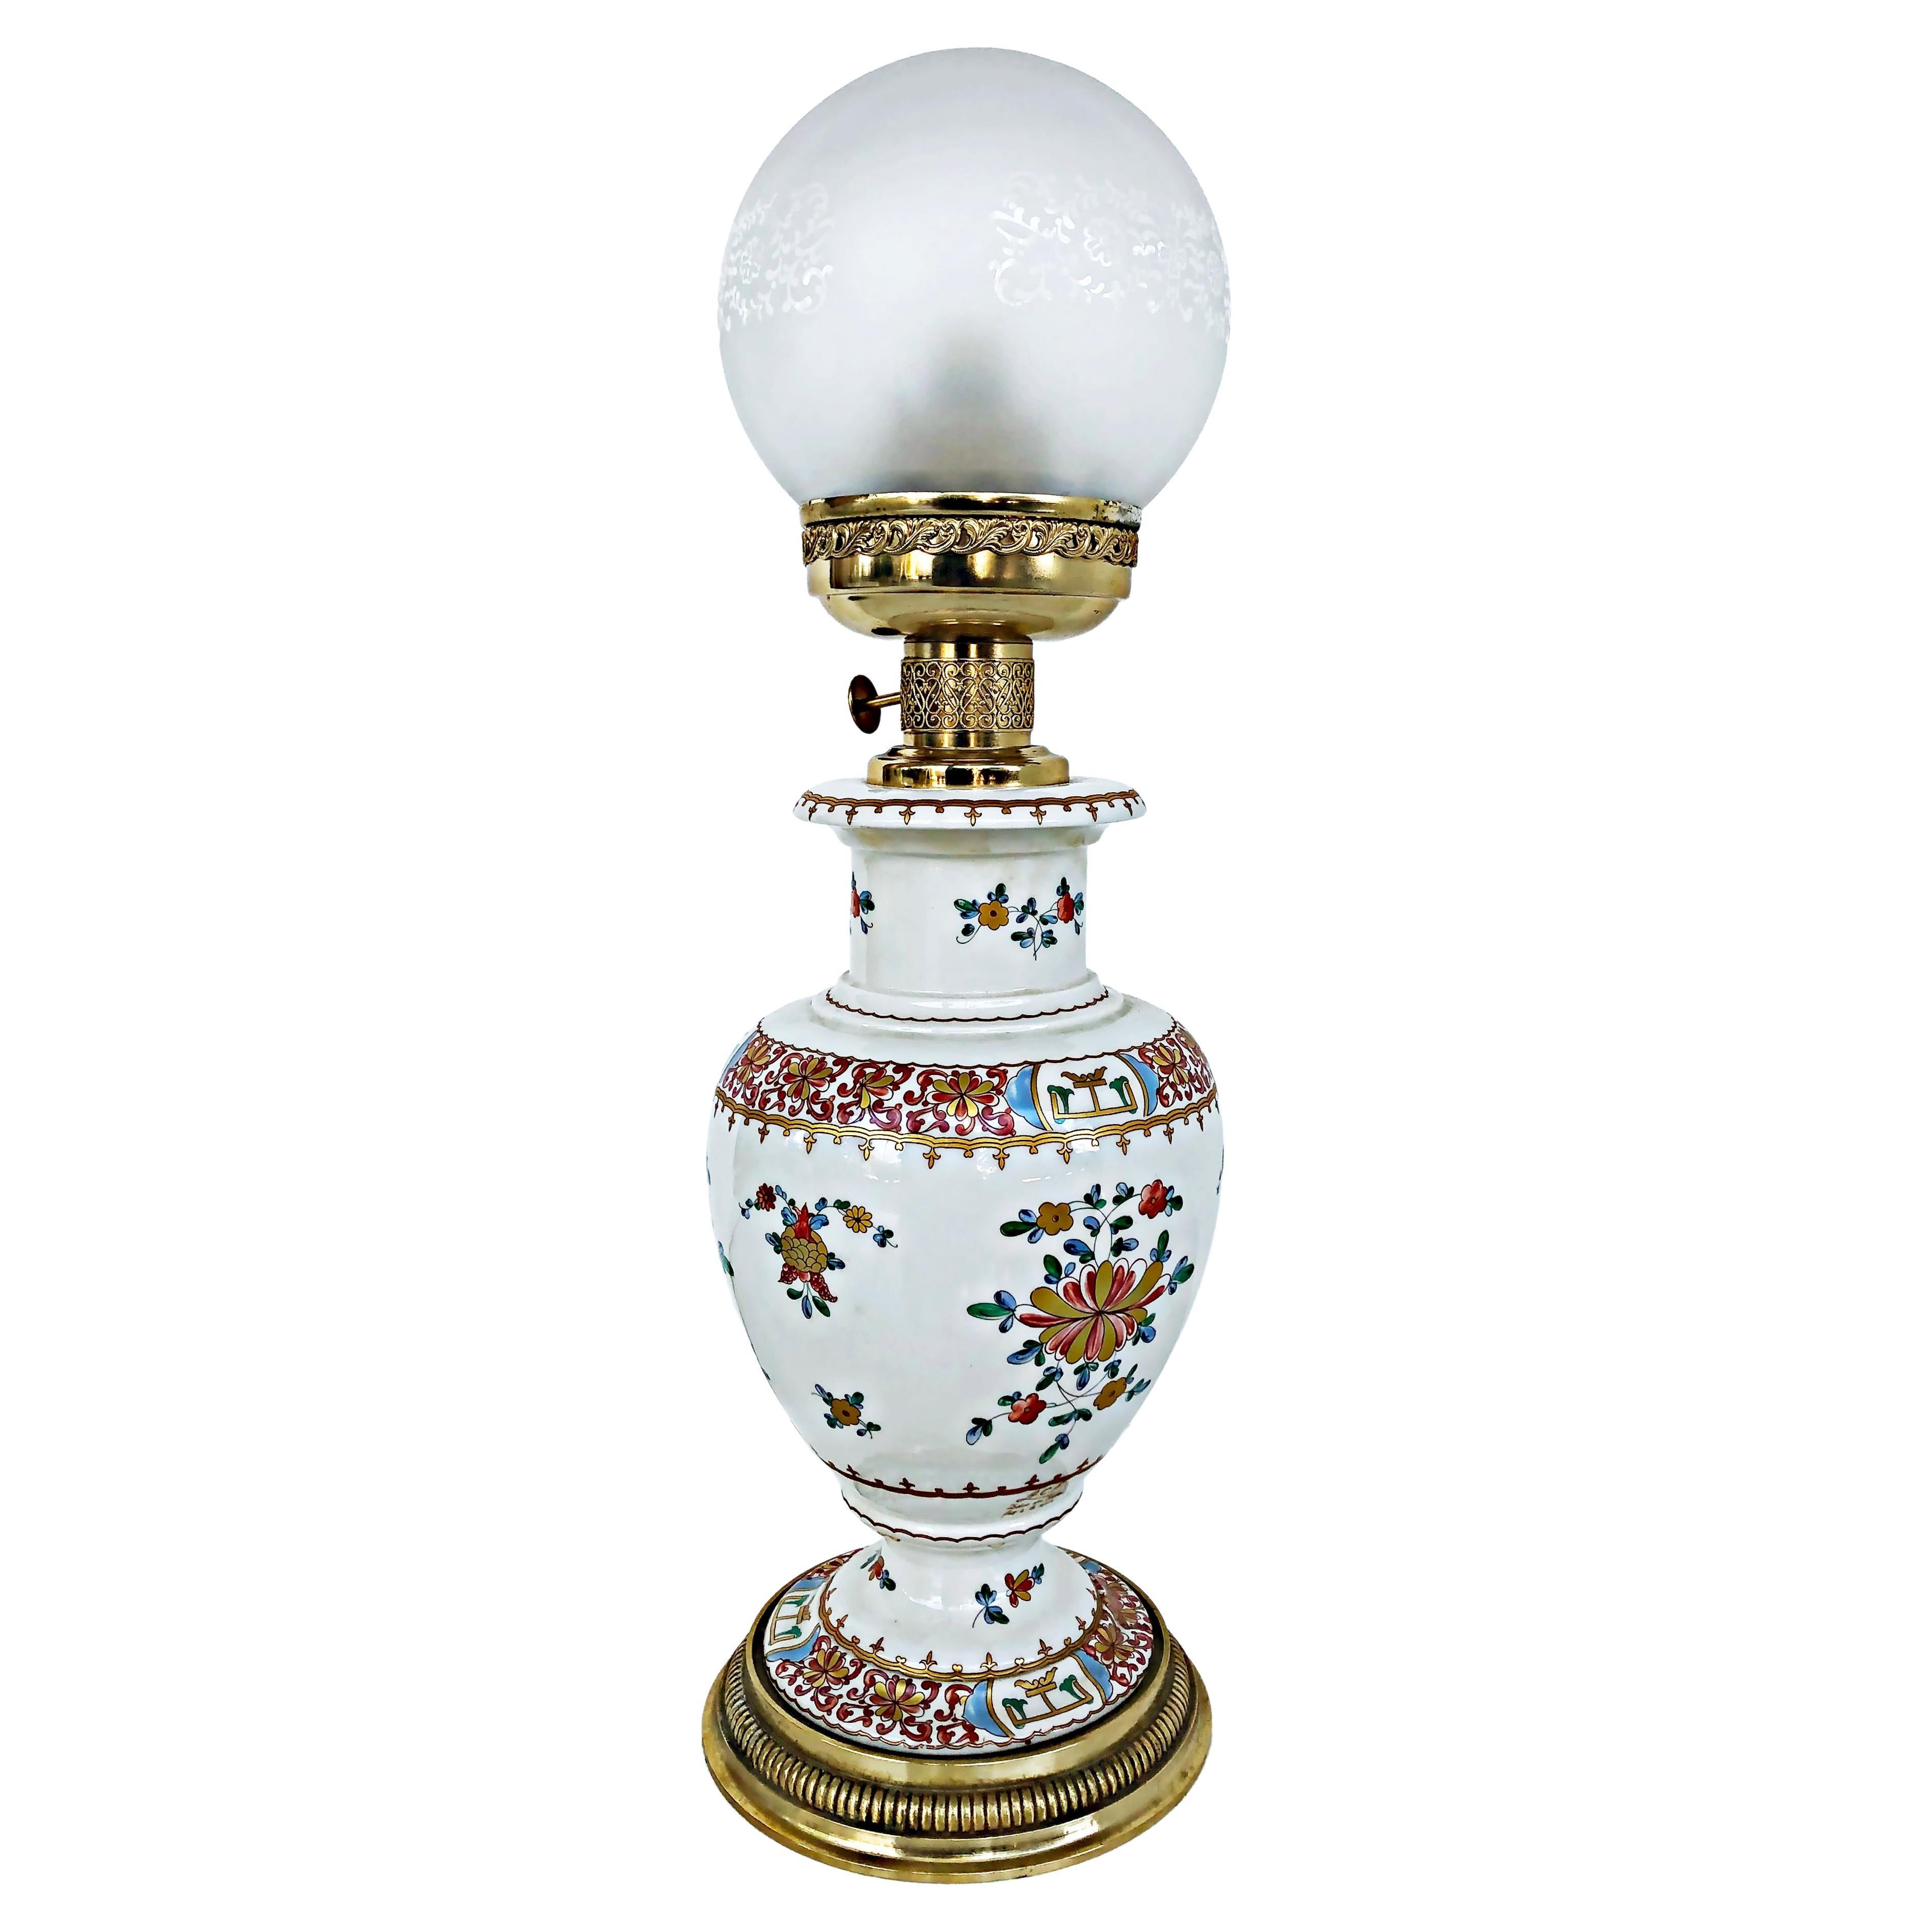 Lampe à huile italienne en porcelaine peinte à la main, électrifiée avec abat-jour en verre gravé